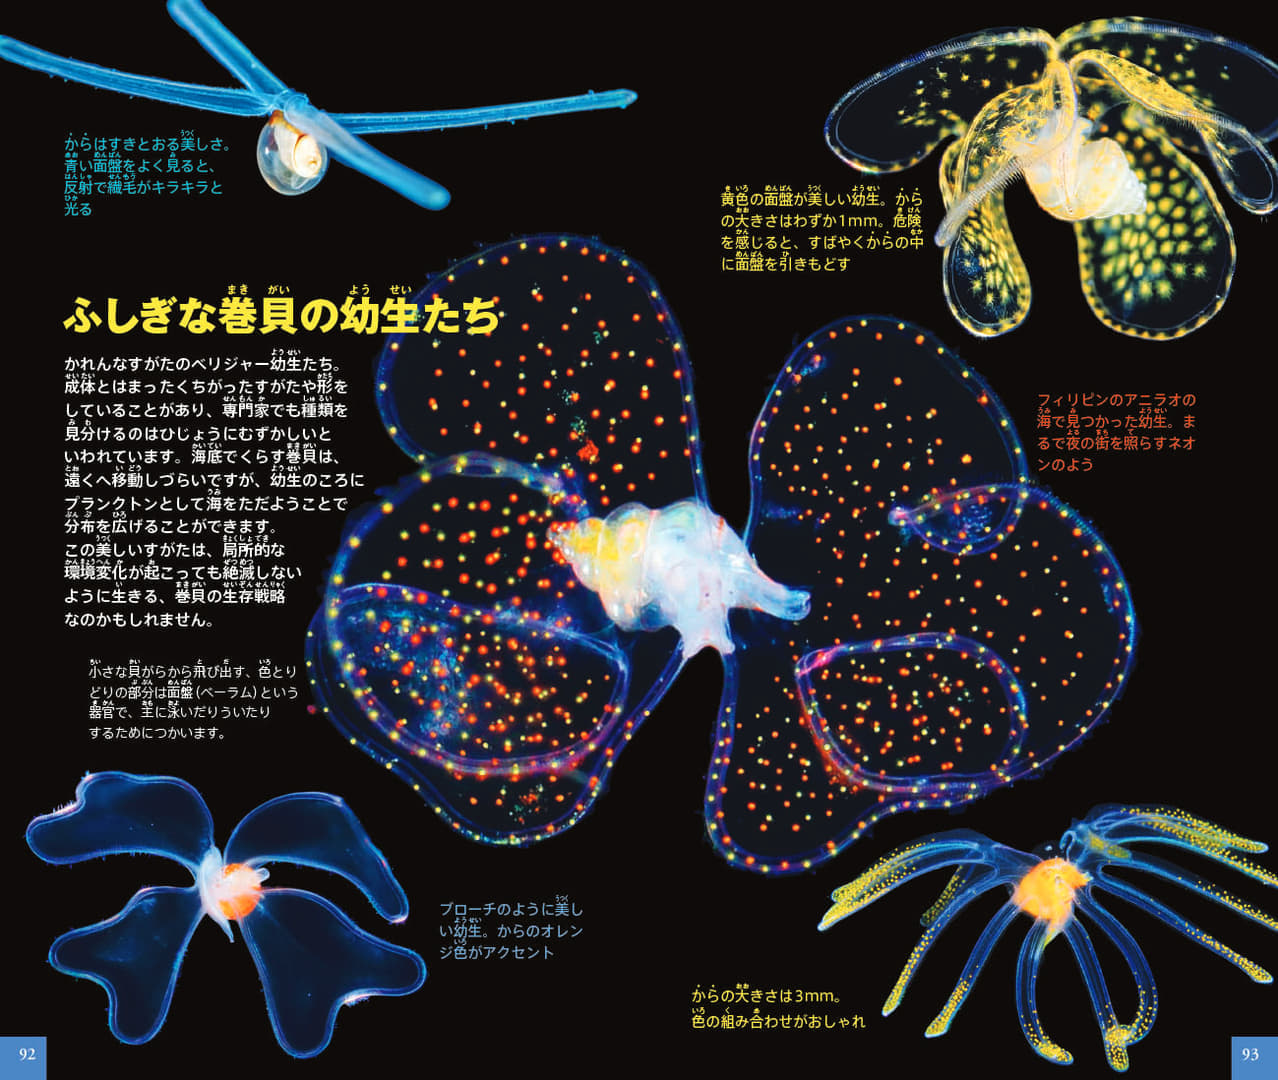 「ネオポケットシリーズ」から『プランクトン』図鑑が発売。日本初となる約500種のプランクトンが掲載
_003